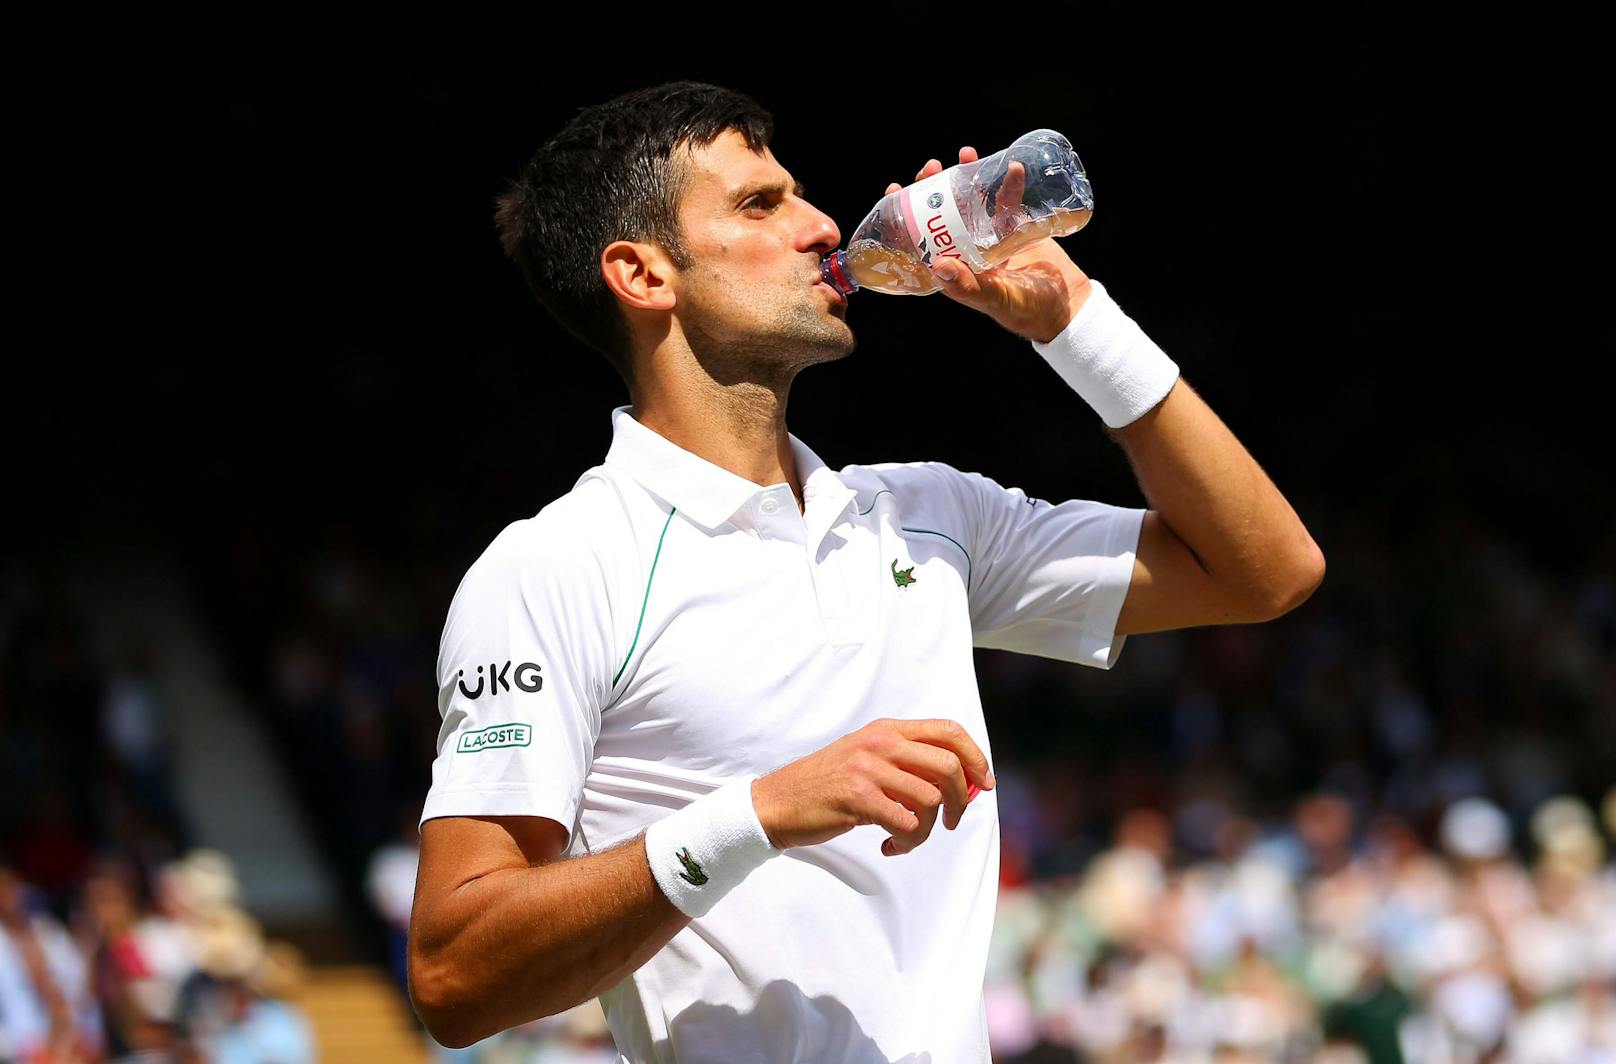 Der serbische Tennisstar Novak Djokovic arbeitet mit dem Wiener Unternehmen "waterdrop" zusammen und sagt jetzt Plastikflaschen den Kampf an.